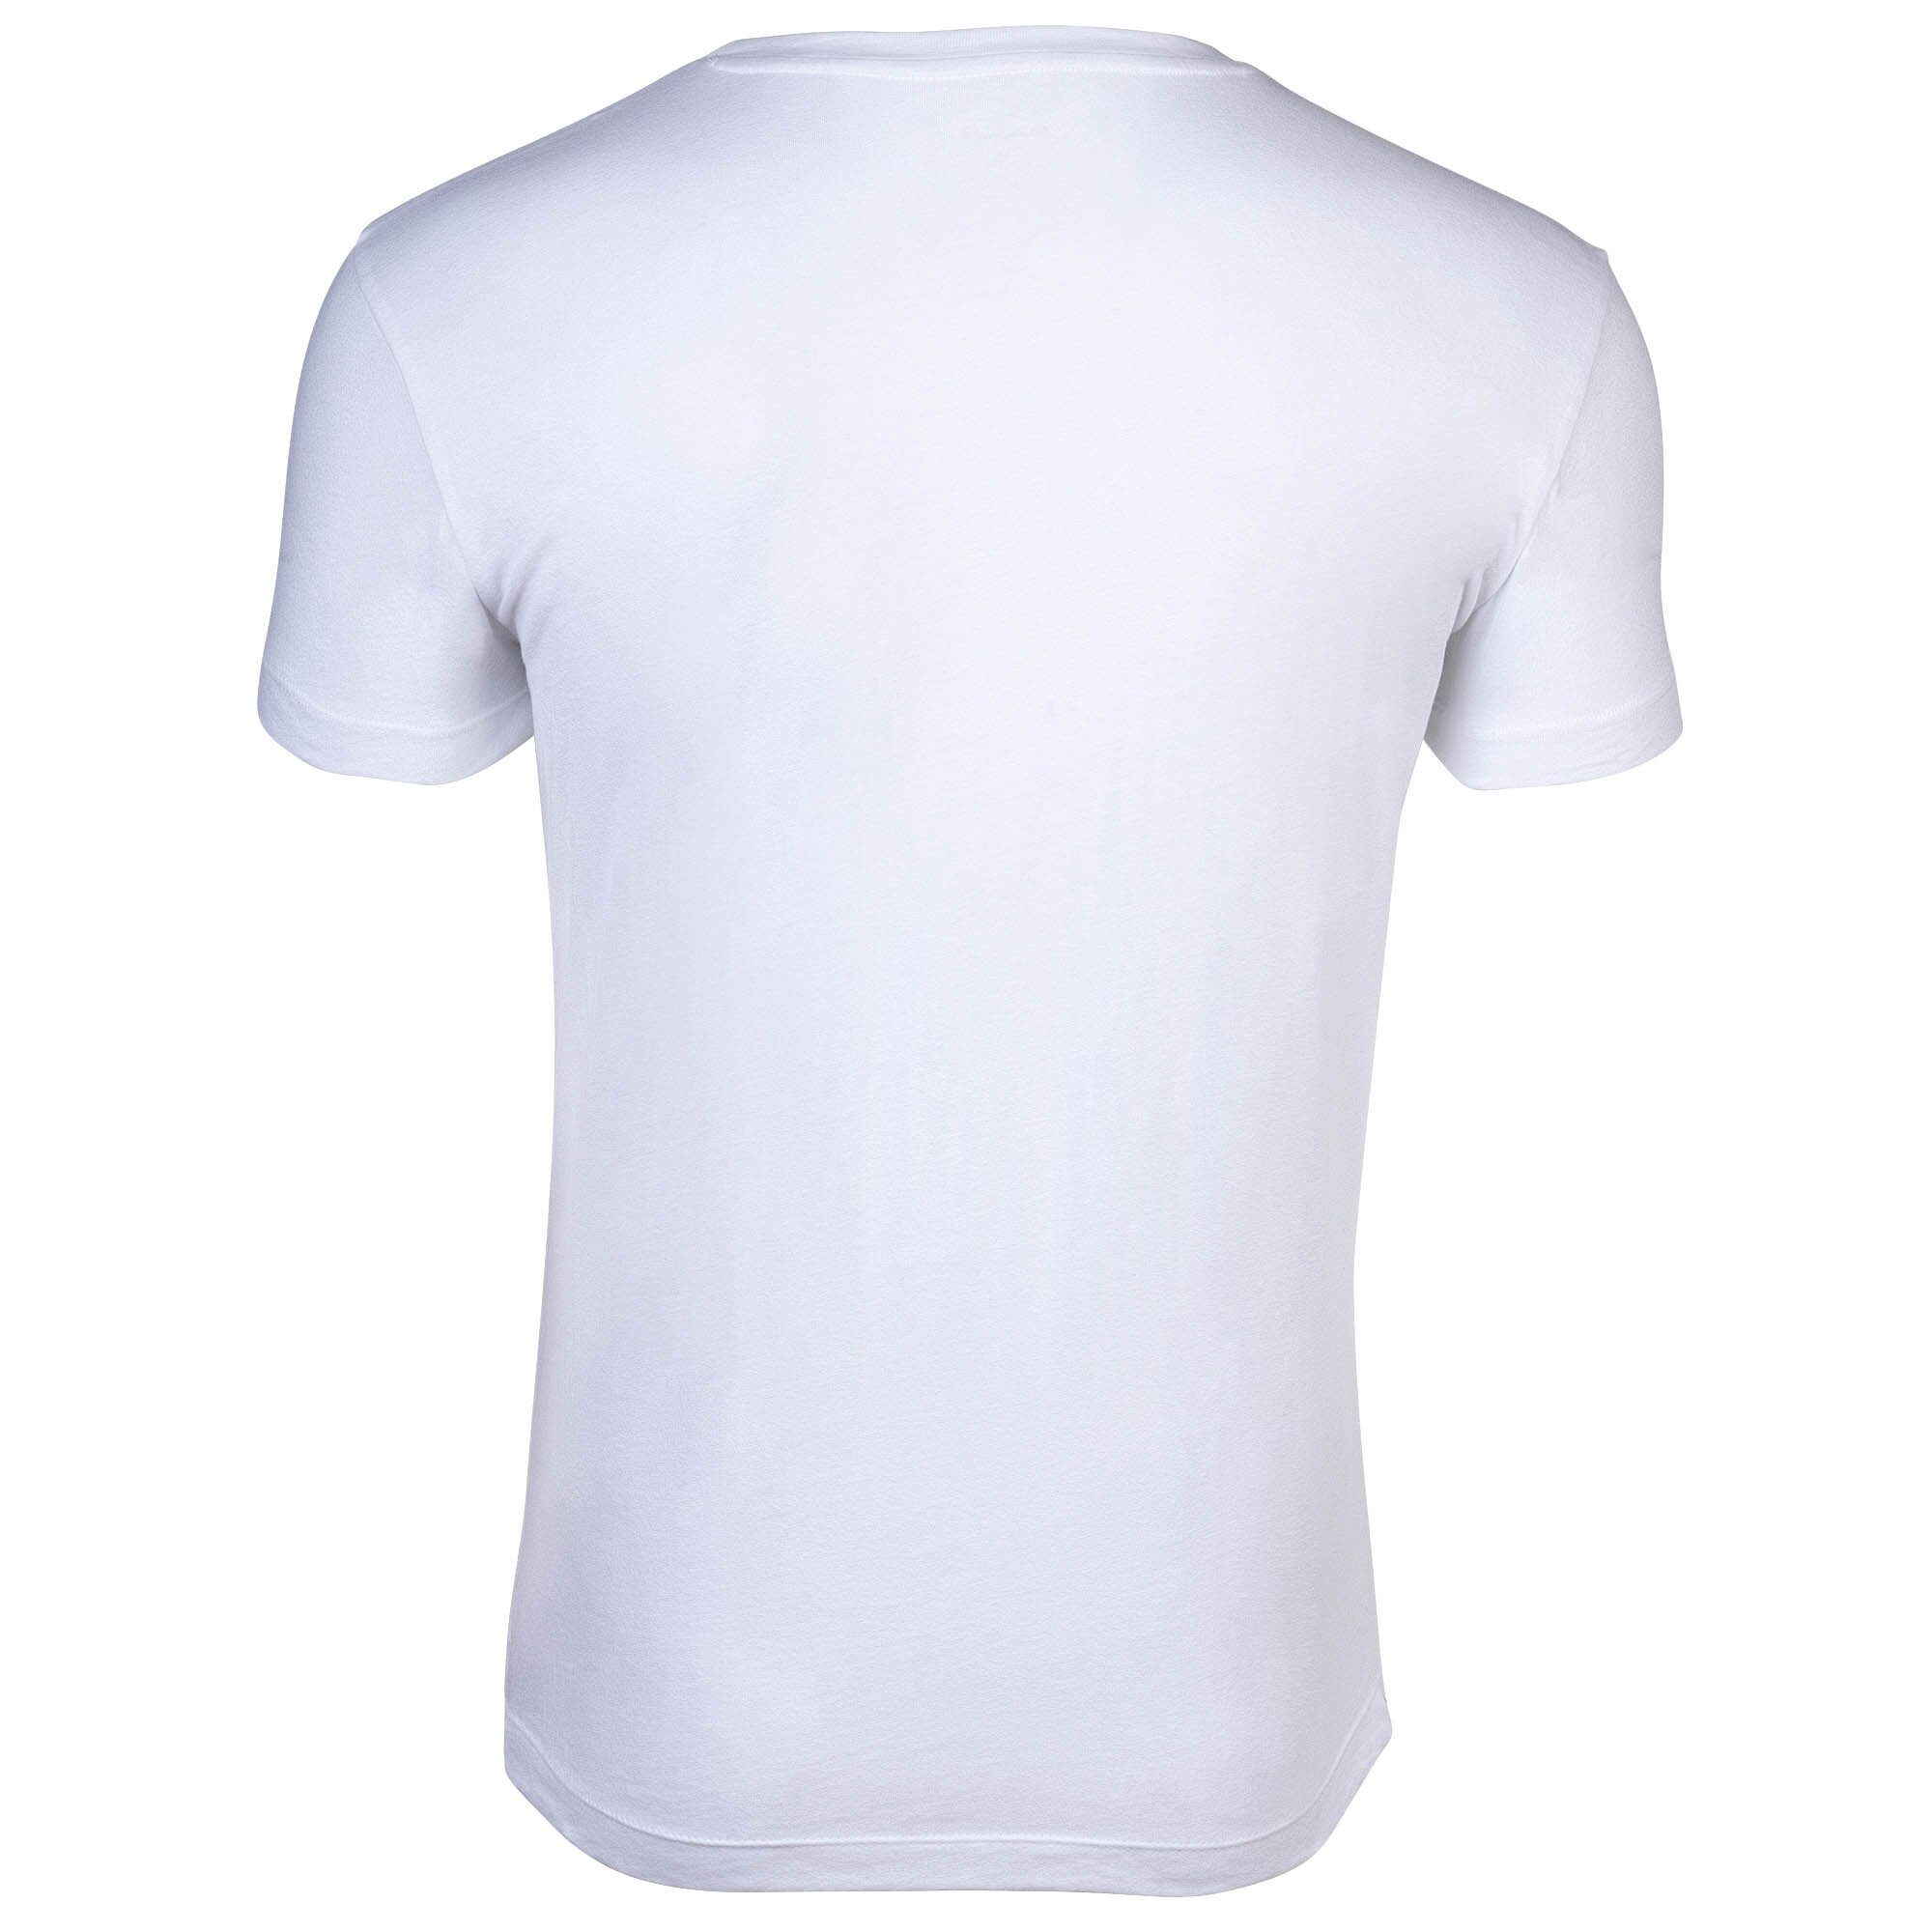 T-Shirt Grau/Weiß Herren Pack - Gant Crew Rundhals, 2er T-Shirt, Neck